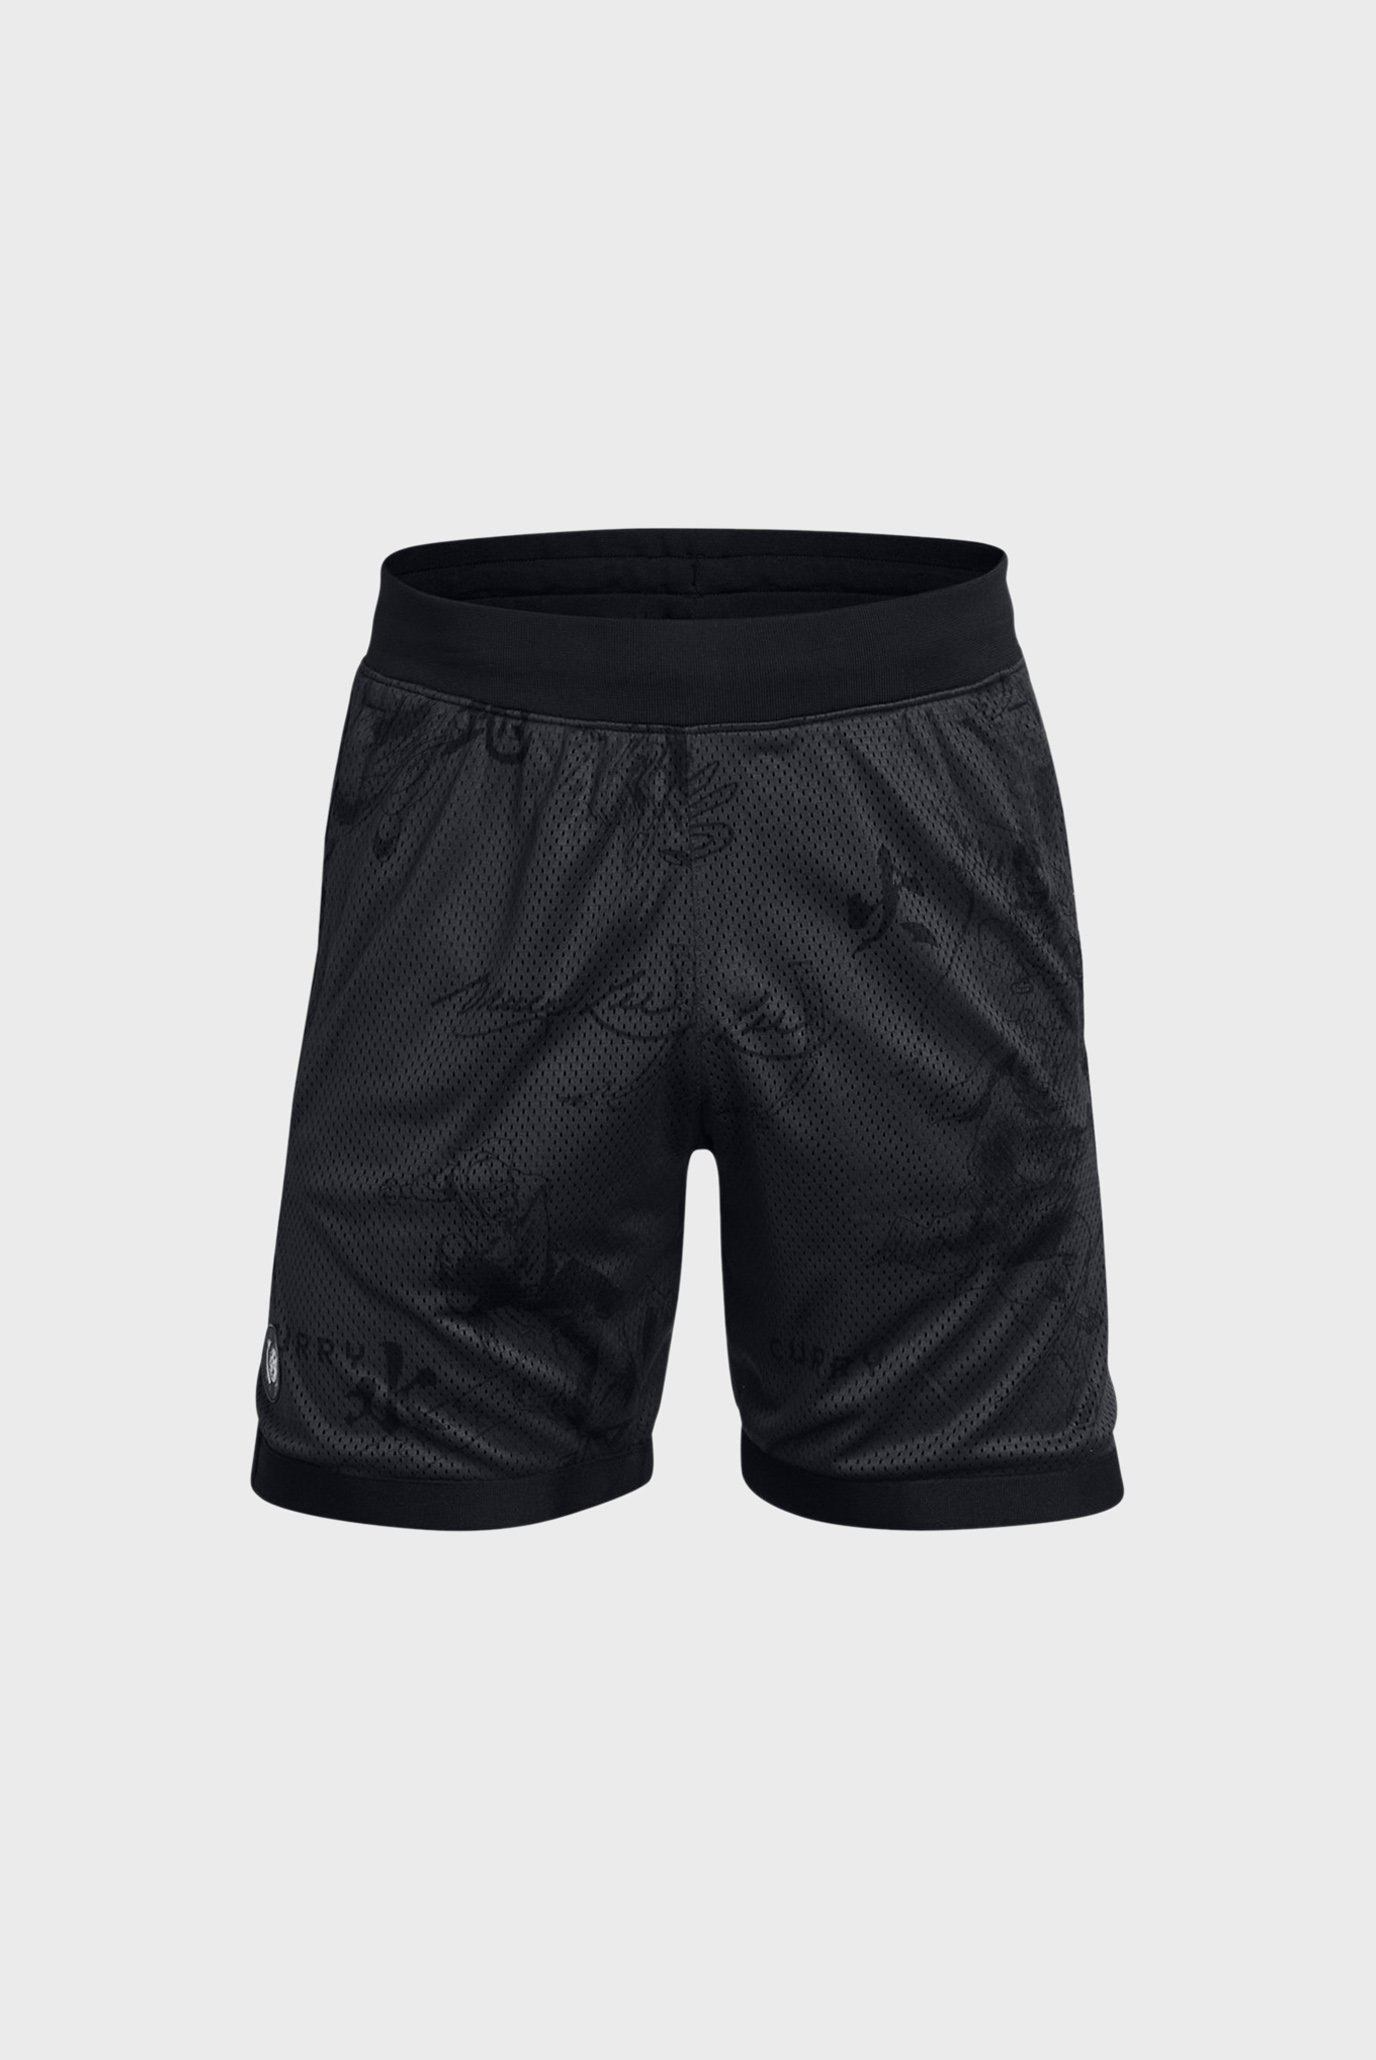 Мужские темно-серые шорты с узором Curry x Bruce Lee Short 1 1